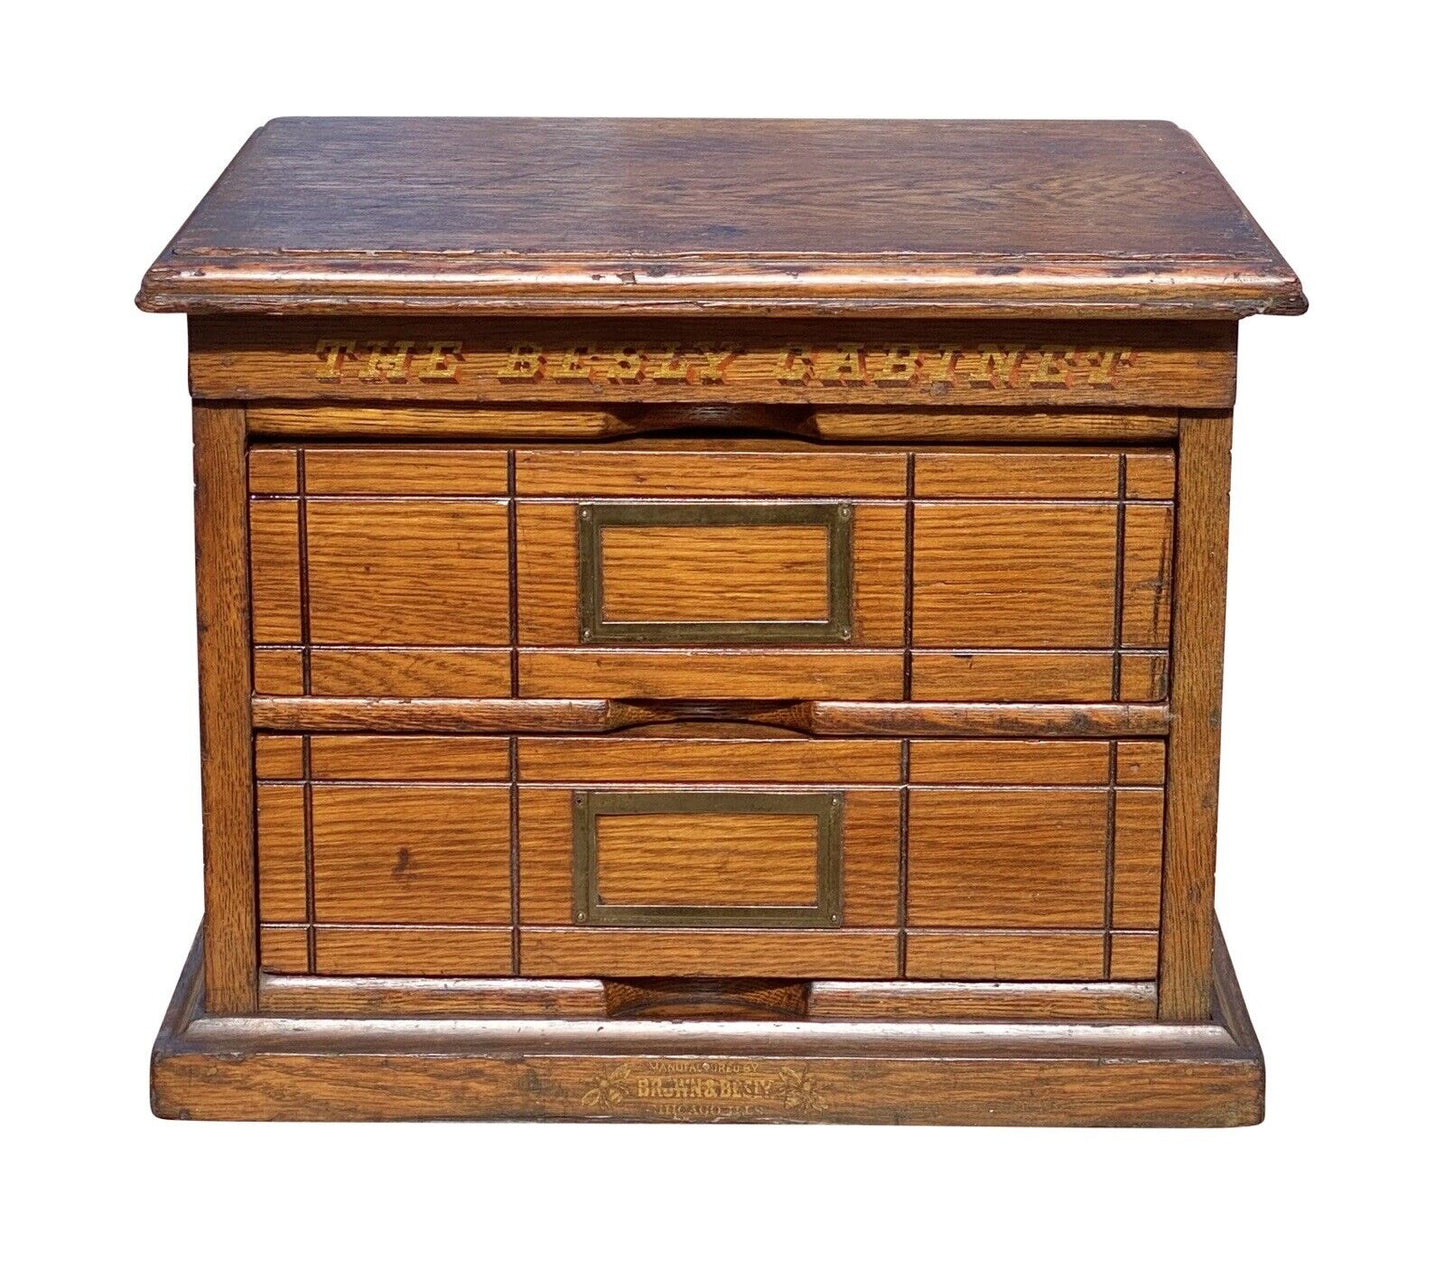 20th C Antique Industrial Oak 2 Drawer Desktop Brown & Besly Letter File Cabinet